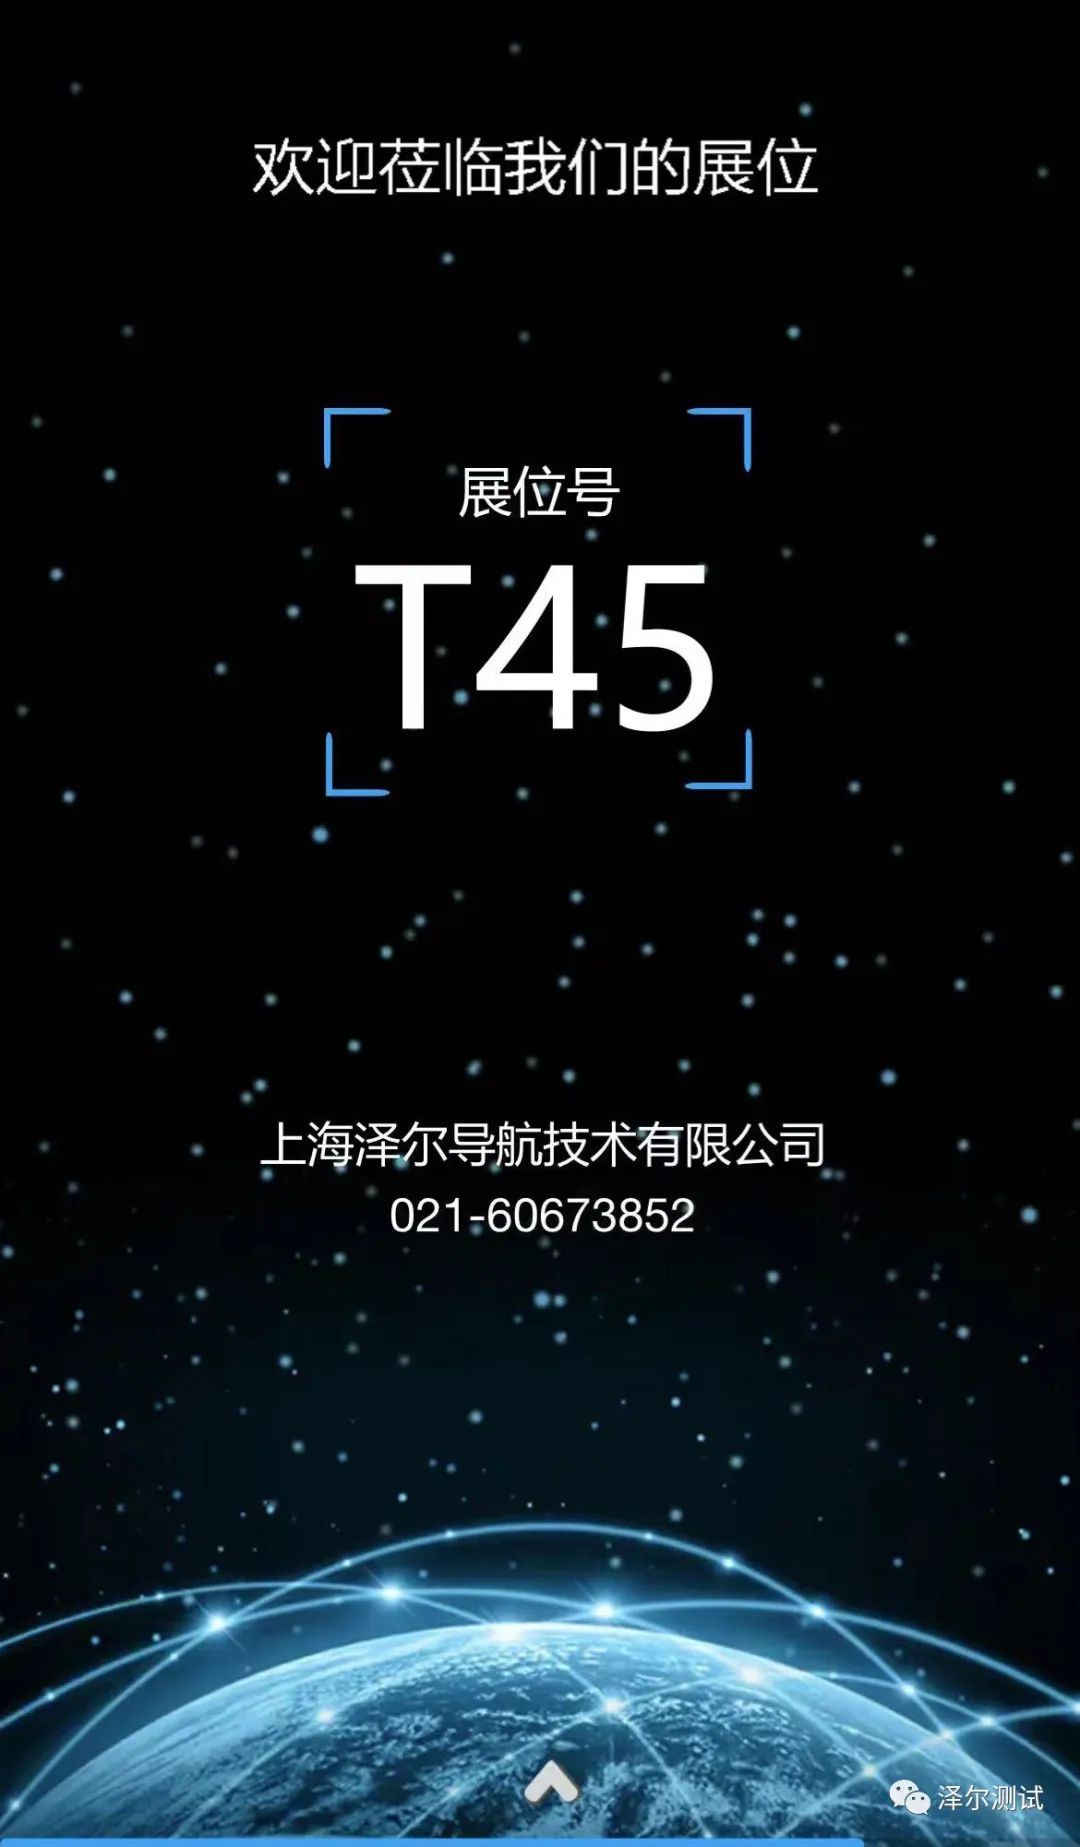 邀请函-第十三届中国卫星导航成就博览会8.jpeg